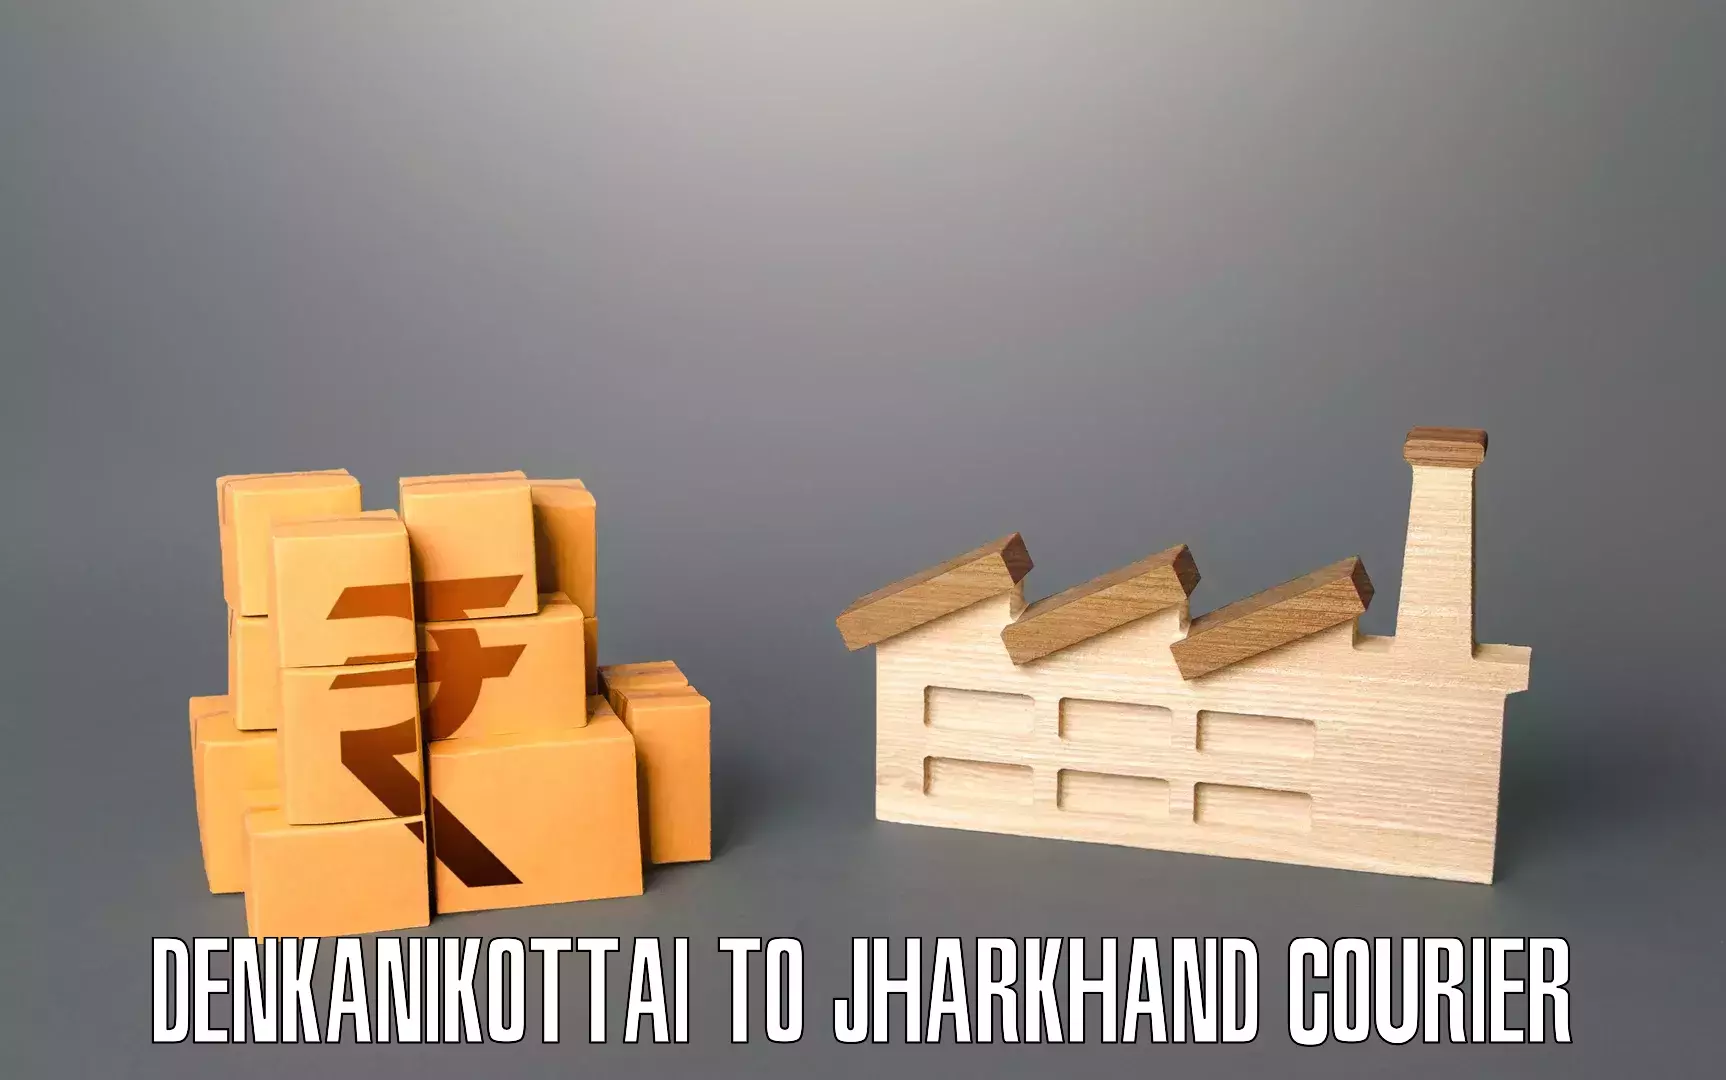 Household transport solutions Denkanikottai to Barharwa